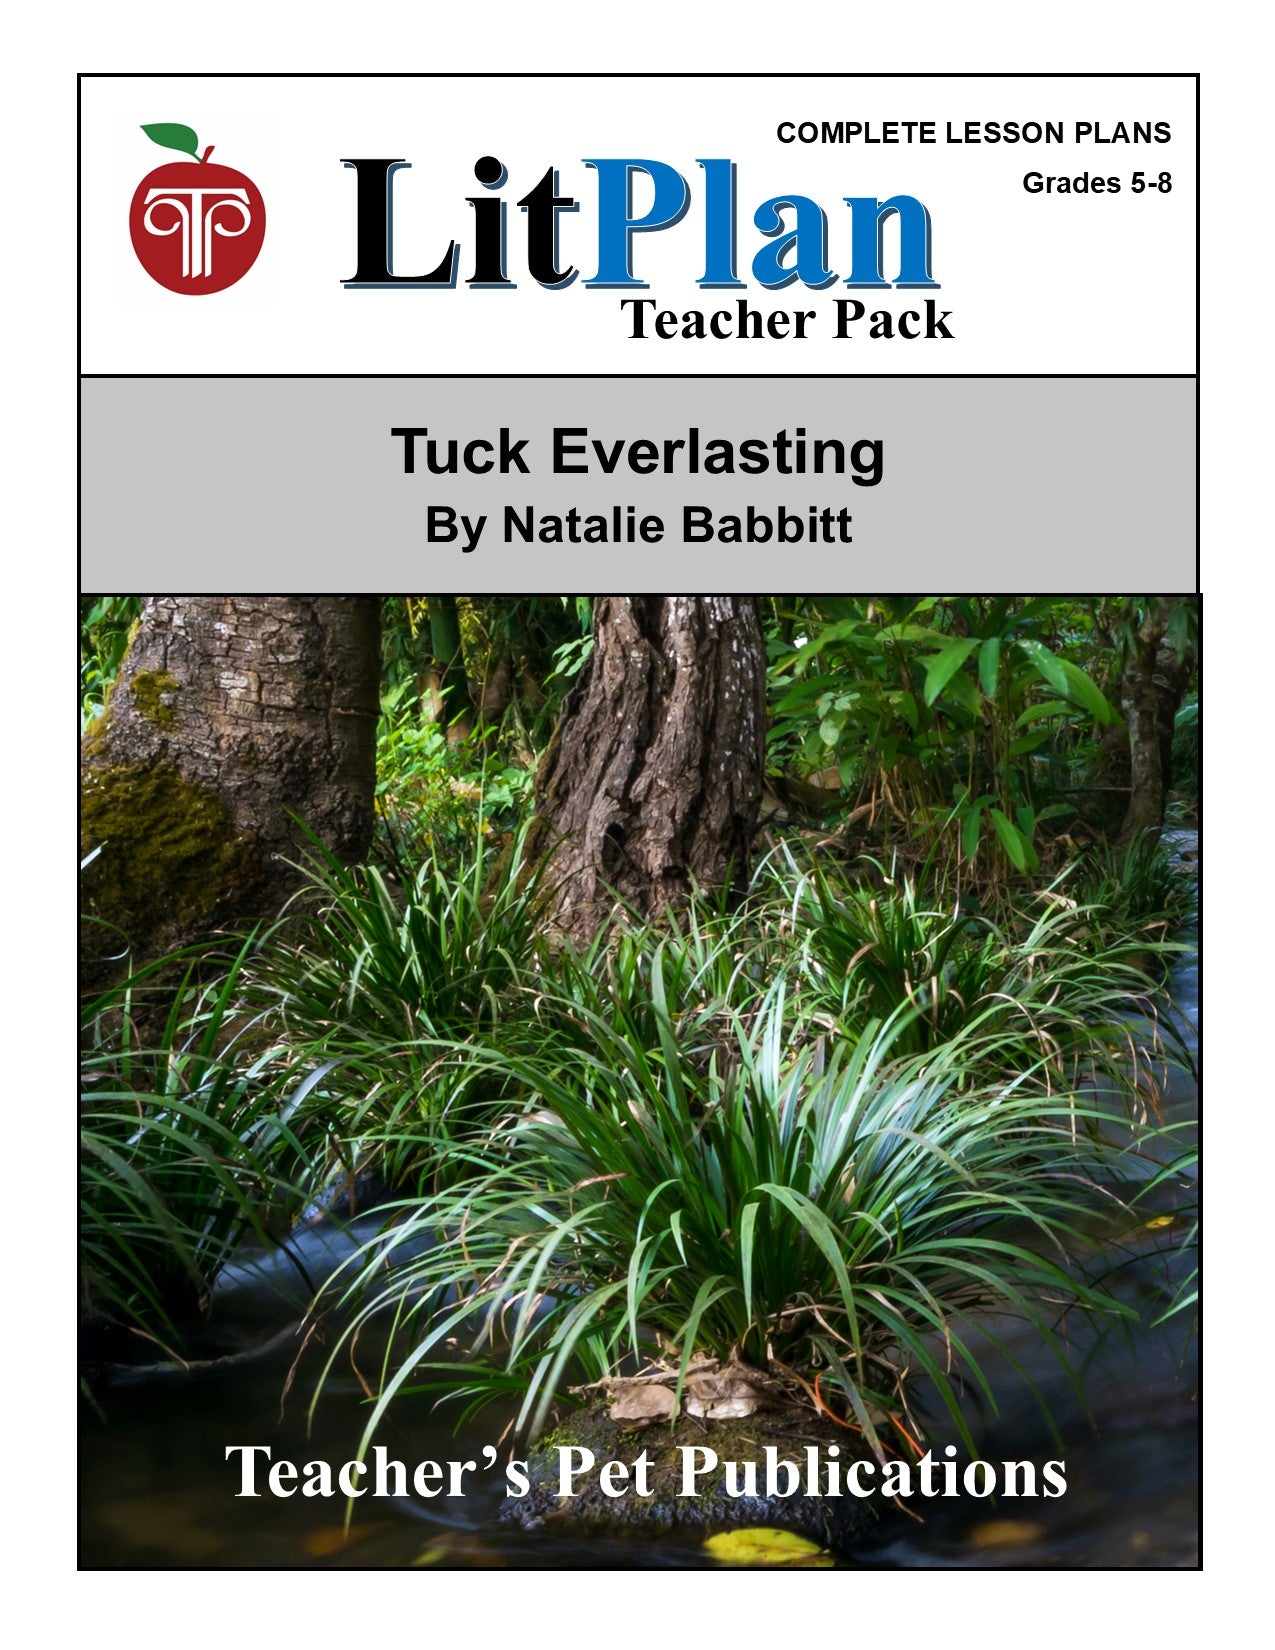 Tuck Everlasting: LitPlan Teacher Pack Grades 5-8